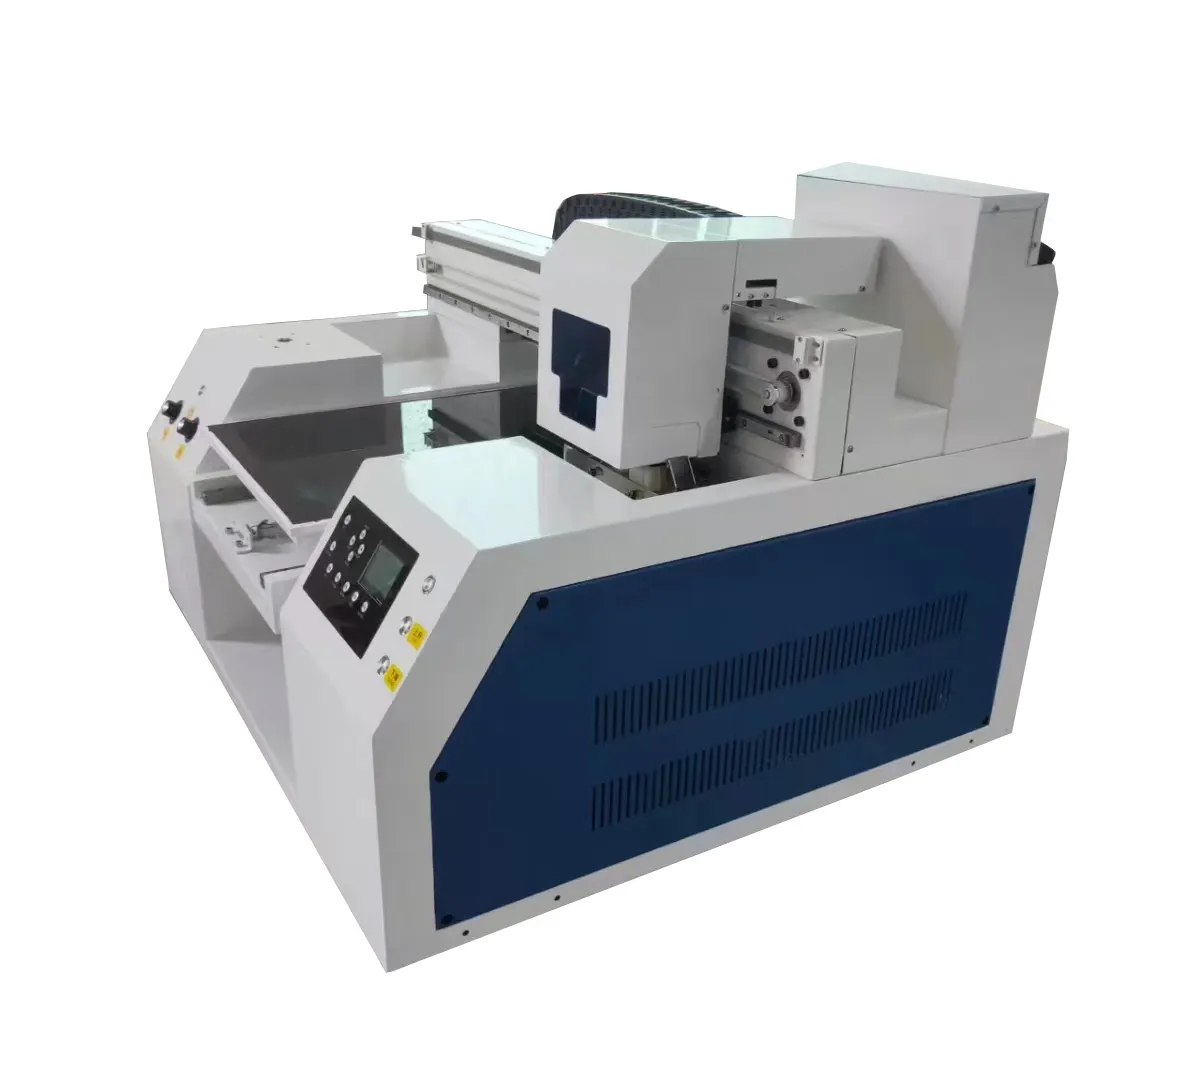 ماكينة طباعة رقمية مسطحة بالأشعة فوق البنفسجية على شكل بطاقة ورقية موديل Epson 4060 تعمل بالأشعة فوق البنفسجية وهي ابتكارات بسعر جيد